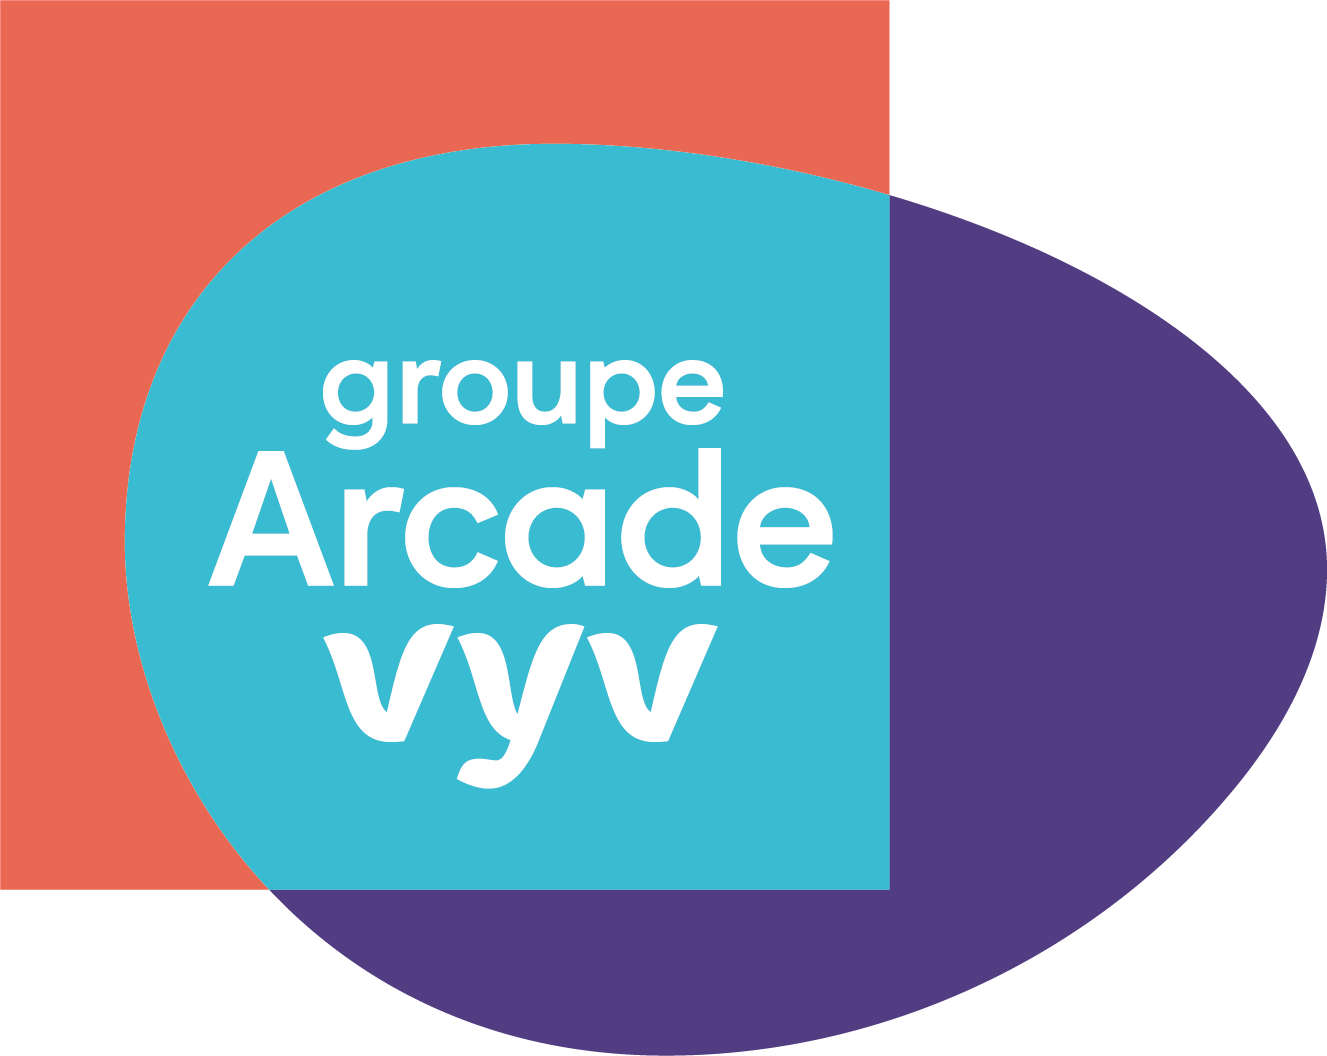 logo-Arcade-Vyv